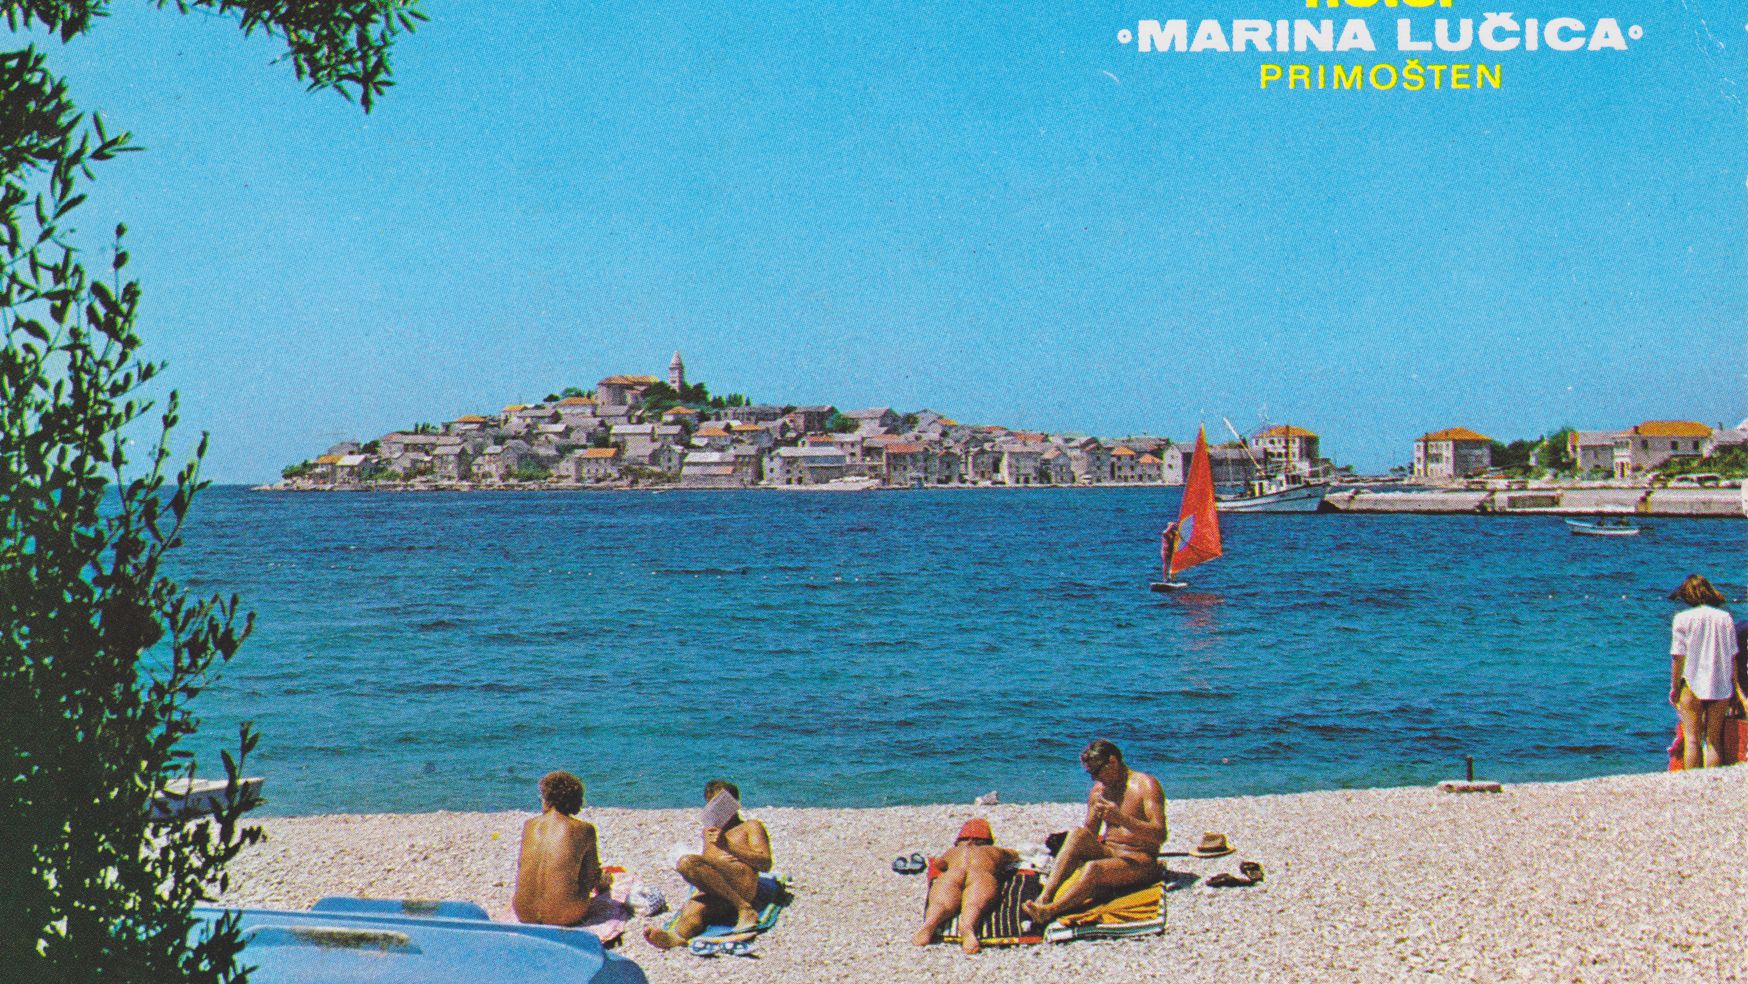 Eine Postkarte aus den 70er Jahren, die einen FKK-Strand in Crotia zeigt, an dem Menschen unter Wasser liegen und schwimmen. Im Hintergrund ist eine Halbinsel mit Häusern